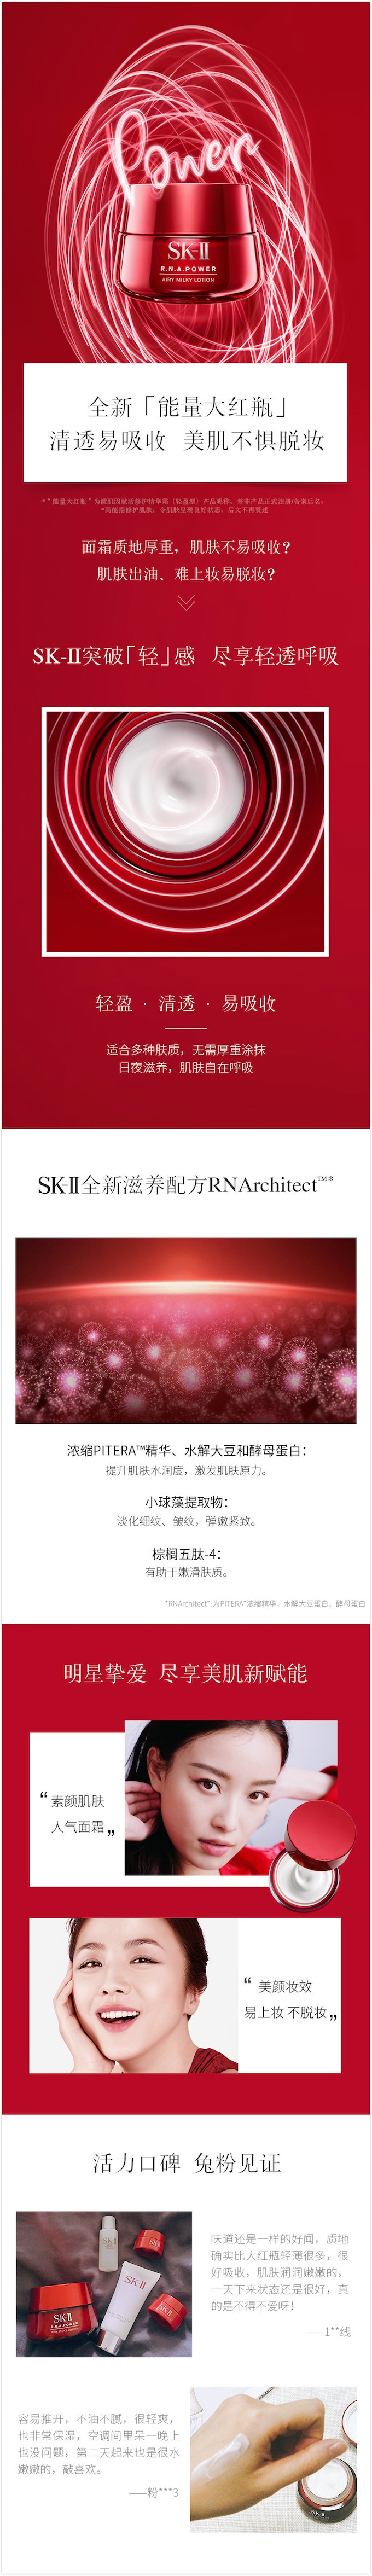 à¸�à¸¥à¸�à¸²à¸£à¸�à¹�à¸�à¸«à¸²à¸£à¸¹à¸�à¸�à¸²à¸�à¸ªà¸³à¸«à¸£à¸±à¸� New SK-II R.N.A. Power Airy Milky Lotion